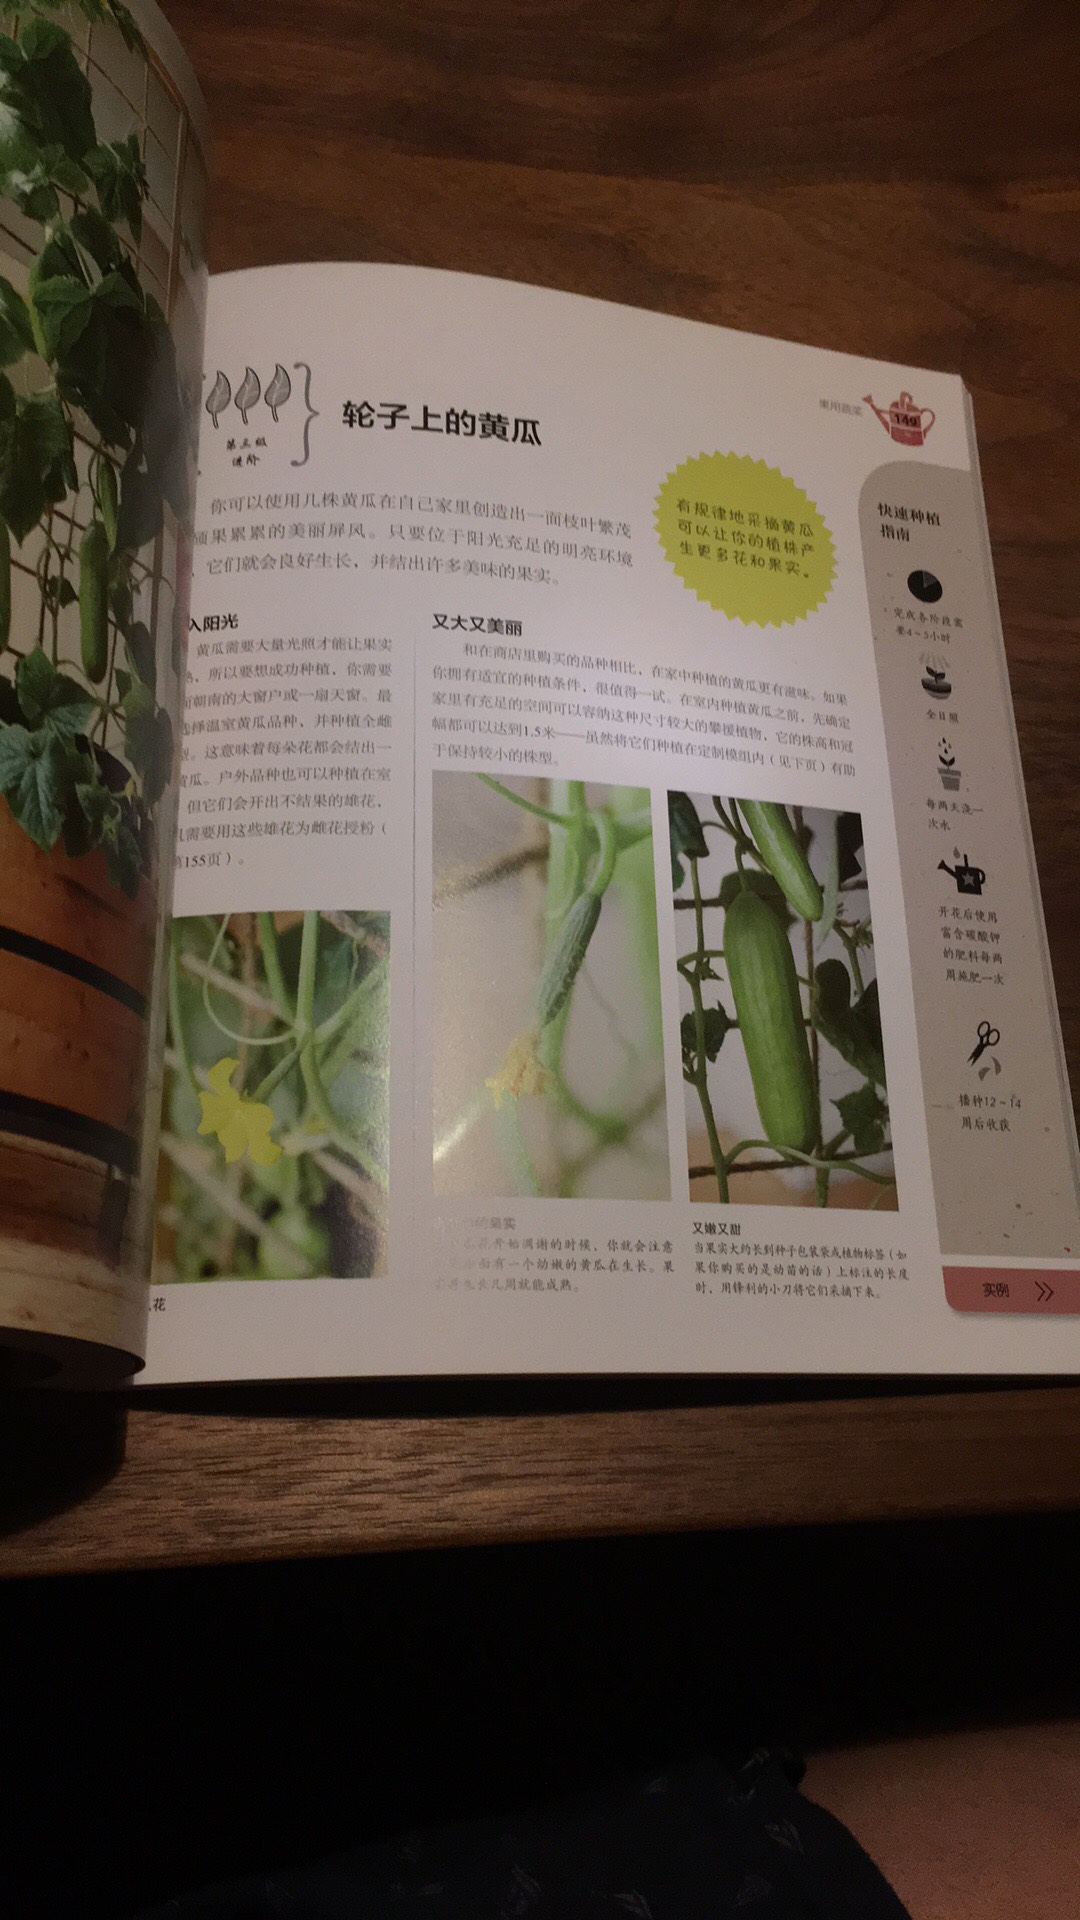 DK出版，质量保证，实际上书名应当是《室内可食用植物指南》，介绍了可食用的香草、蔬菜和水果在室内的种植。